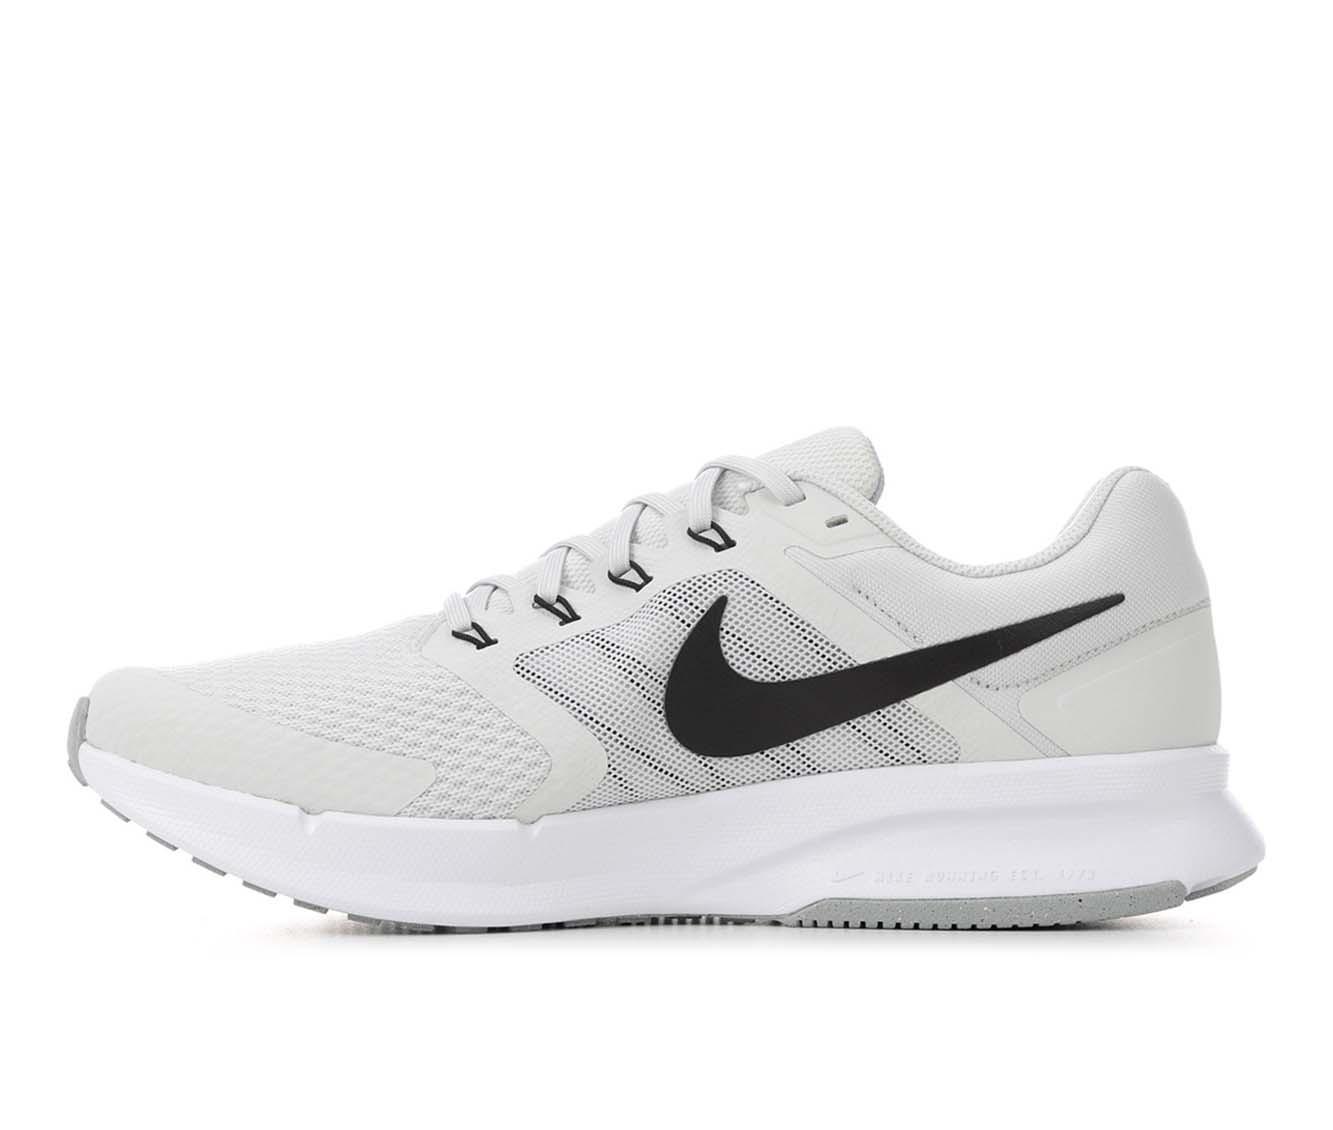 Men's Nike Run Swift 3 Running Shoes